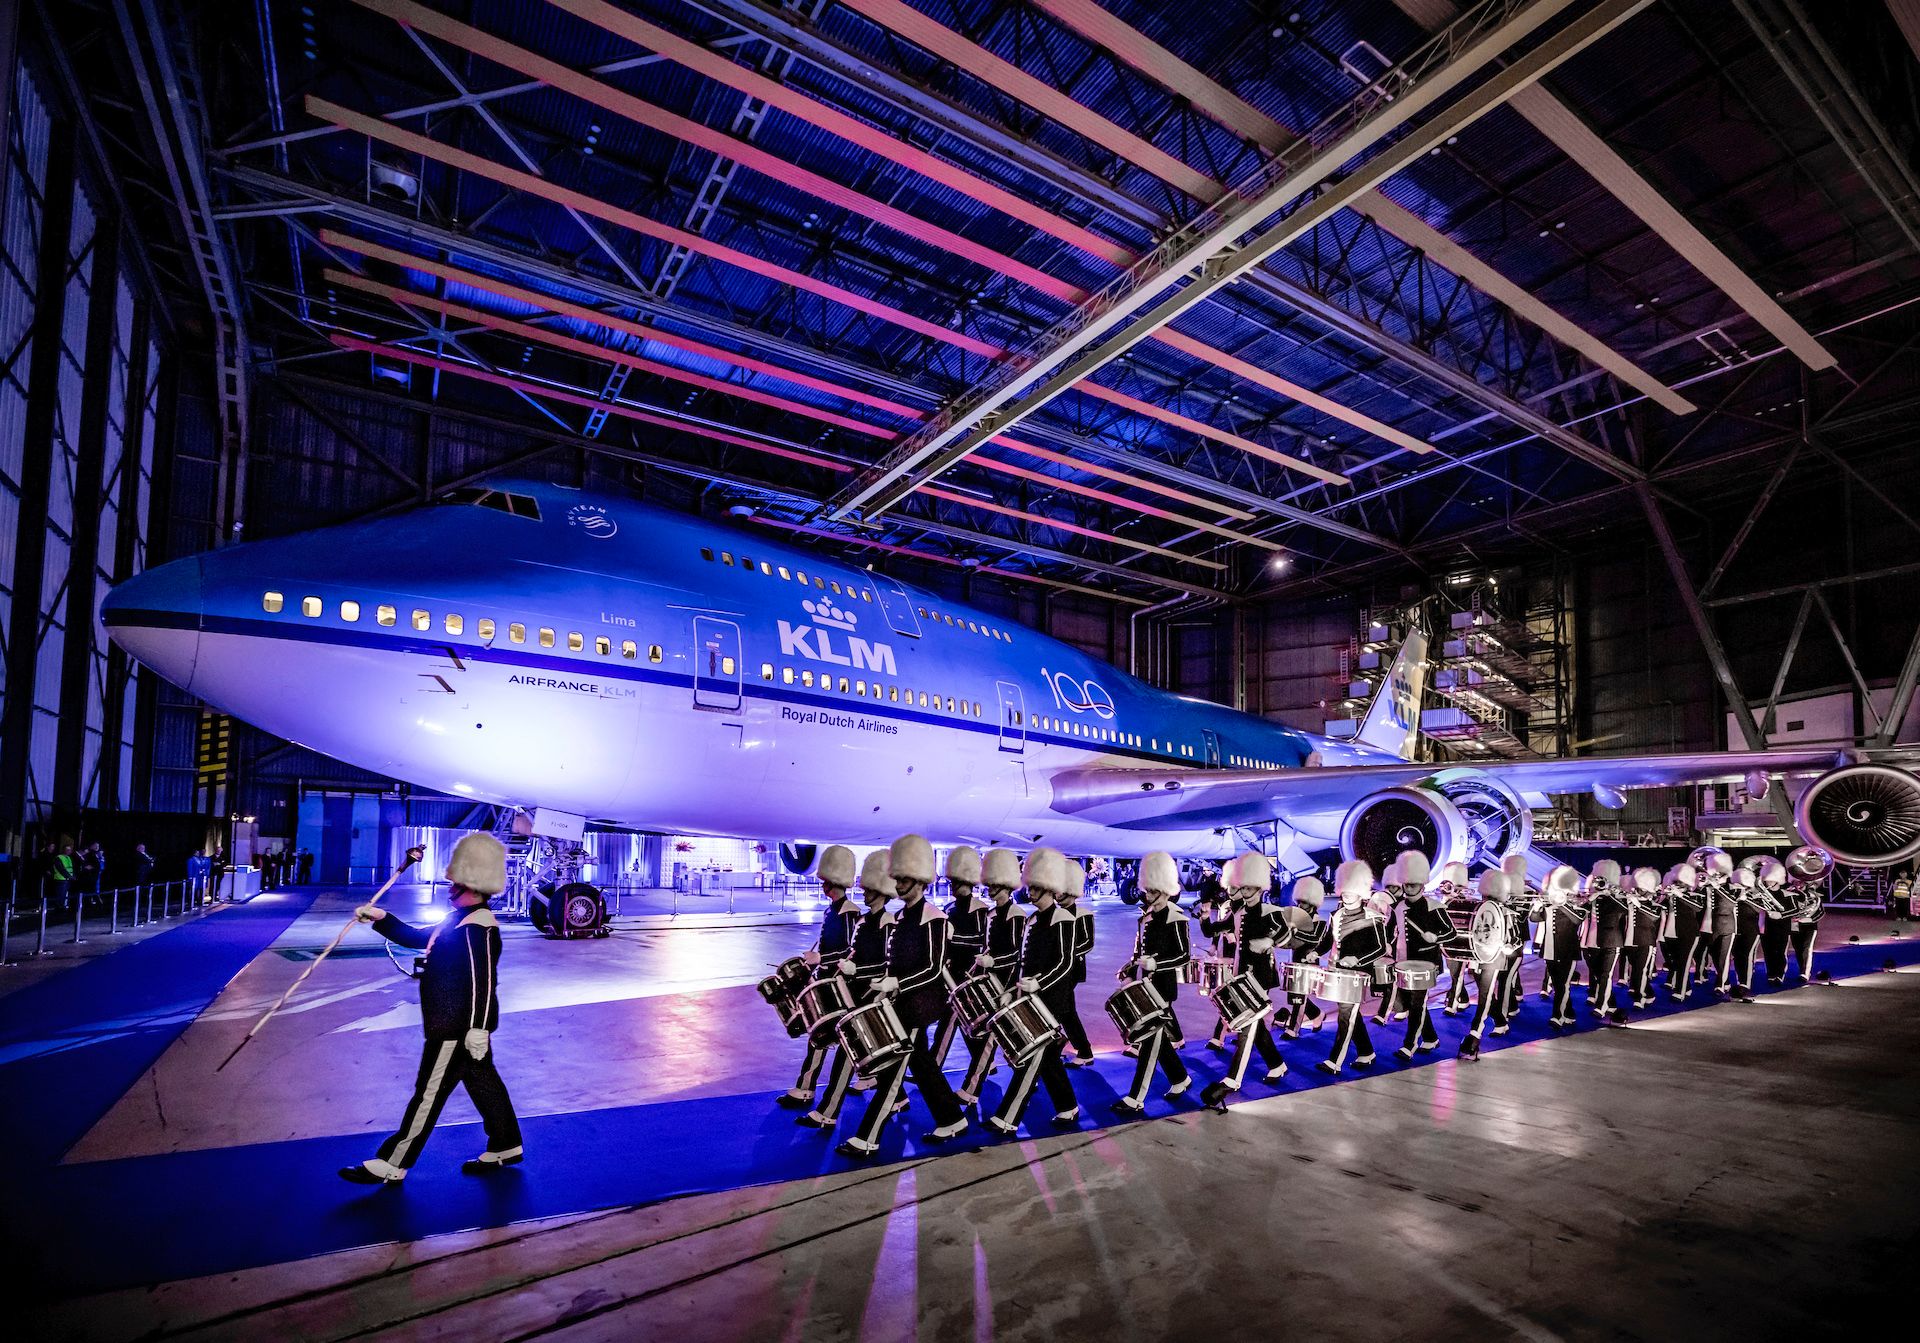 Gouden Giraffe deelnemer: KLM scoort op diverse vlakken met KLM 100 Experience